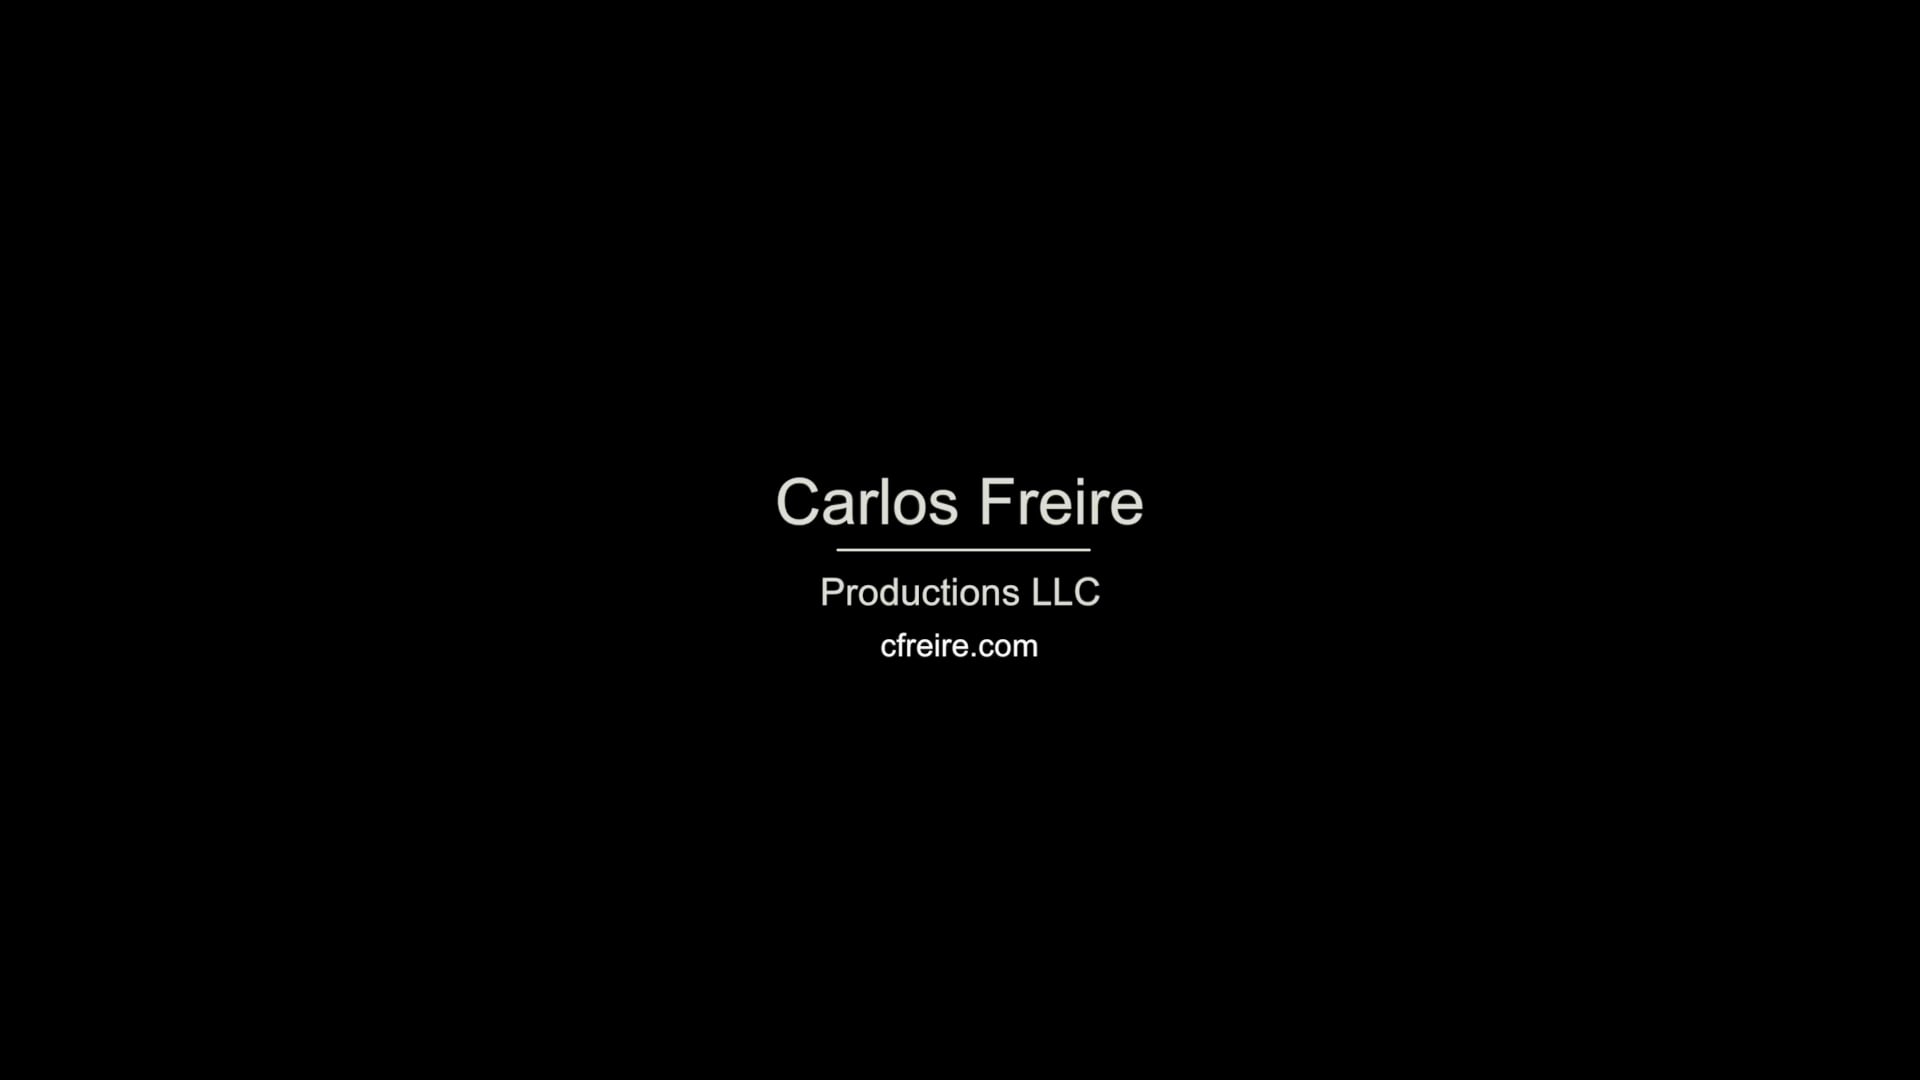 CARLOS FREIRE's REEL